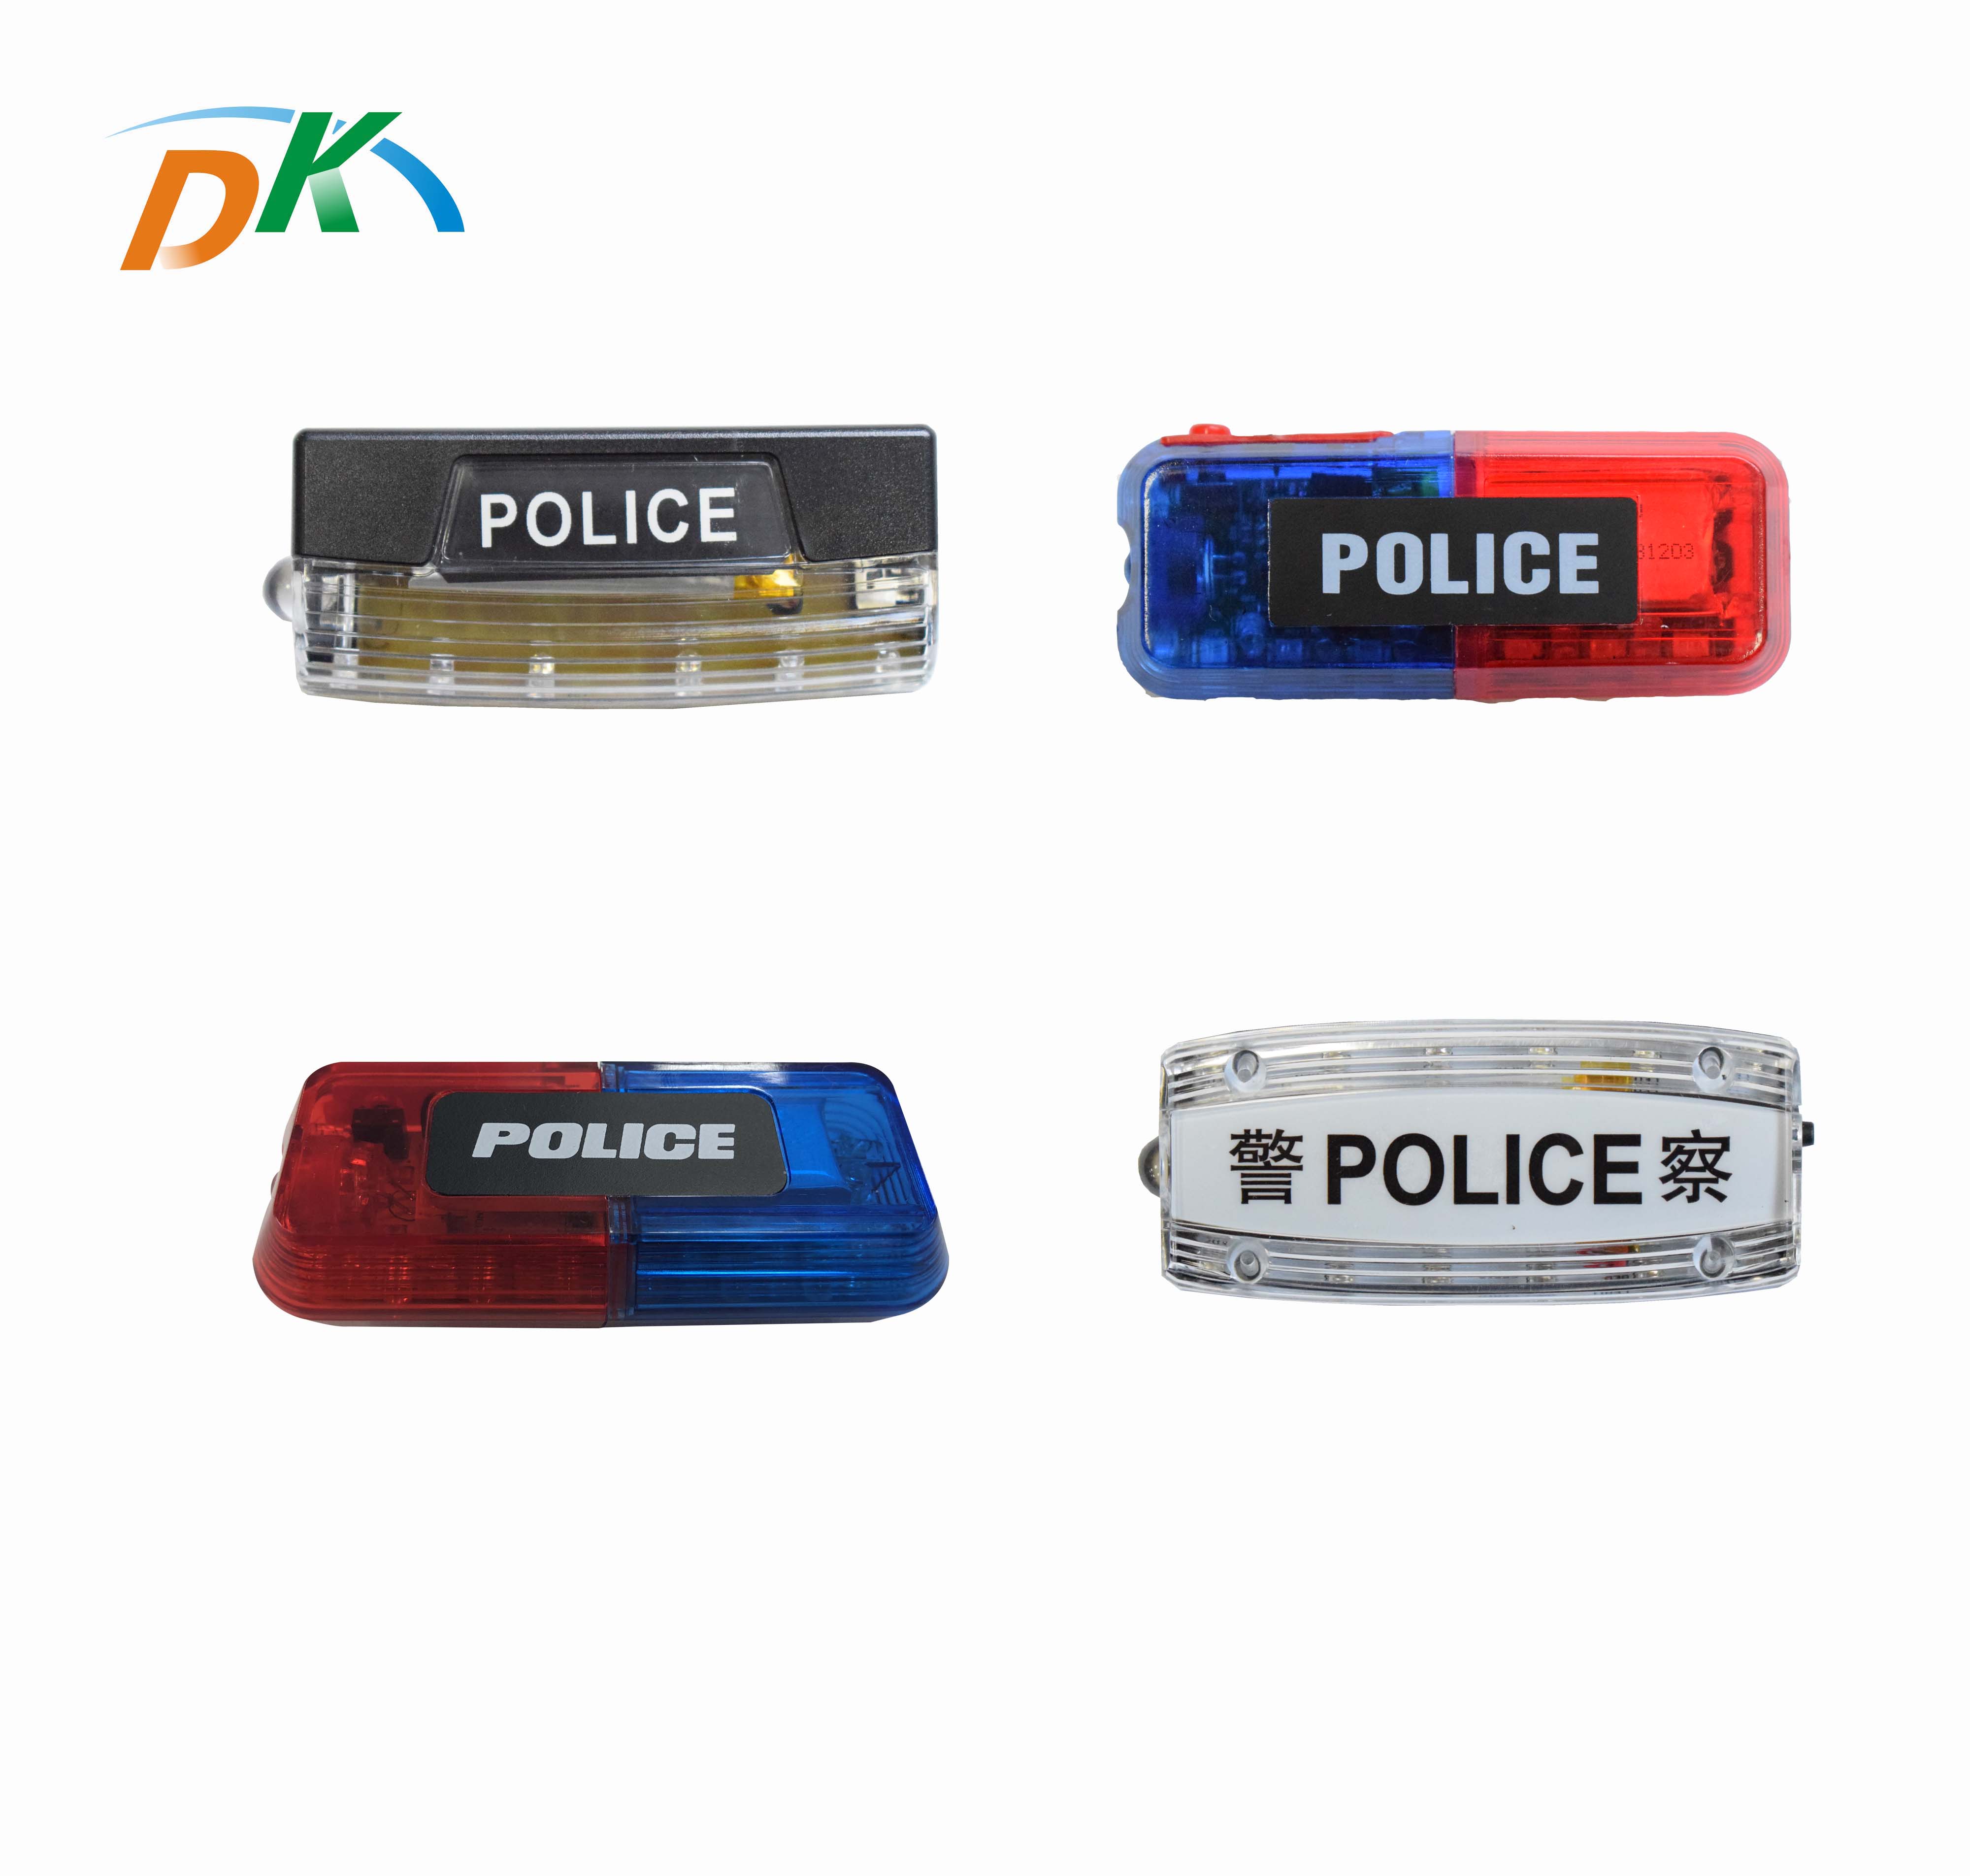 DK LED Muiltfuction Red blue white police led warning shoulder lights for safety